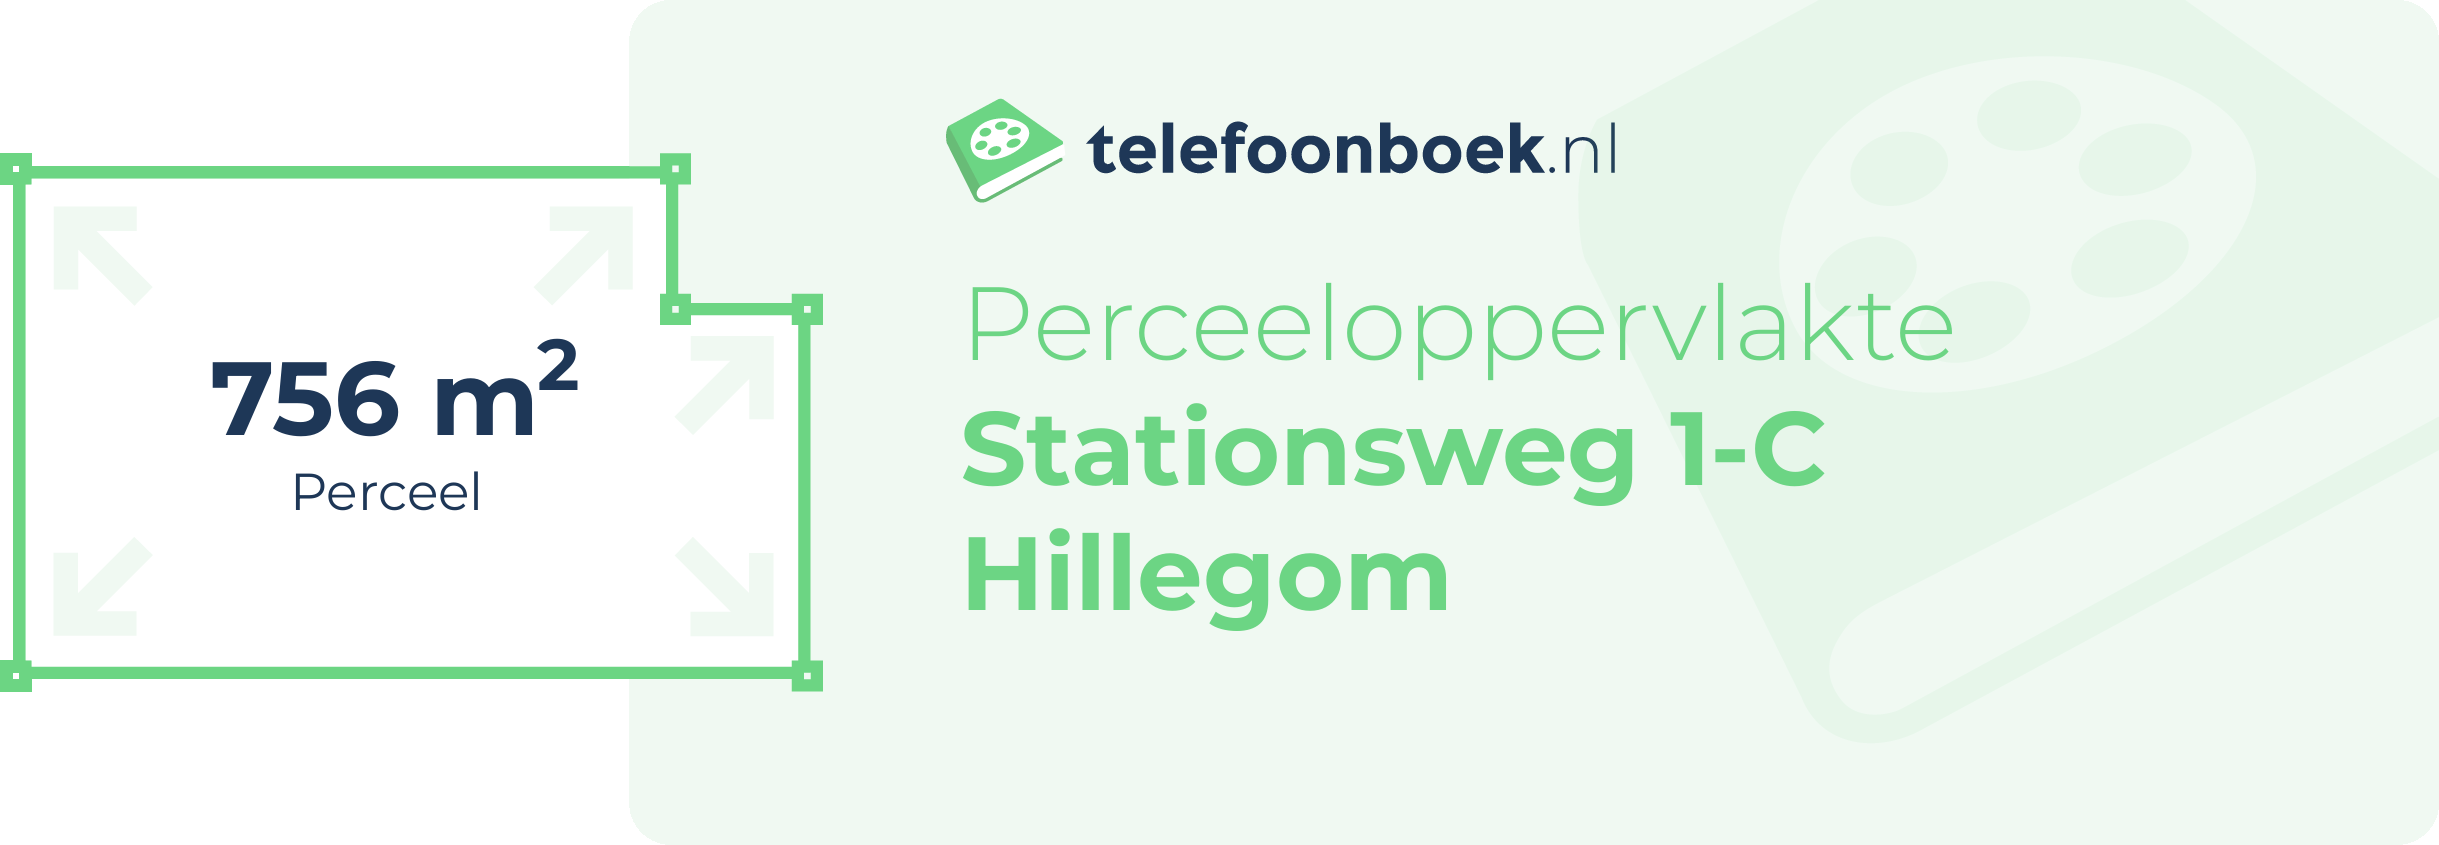 Perceeloppervlakte Stationsweg 1-C Hillegom